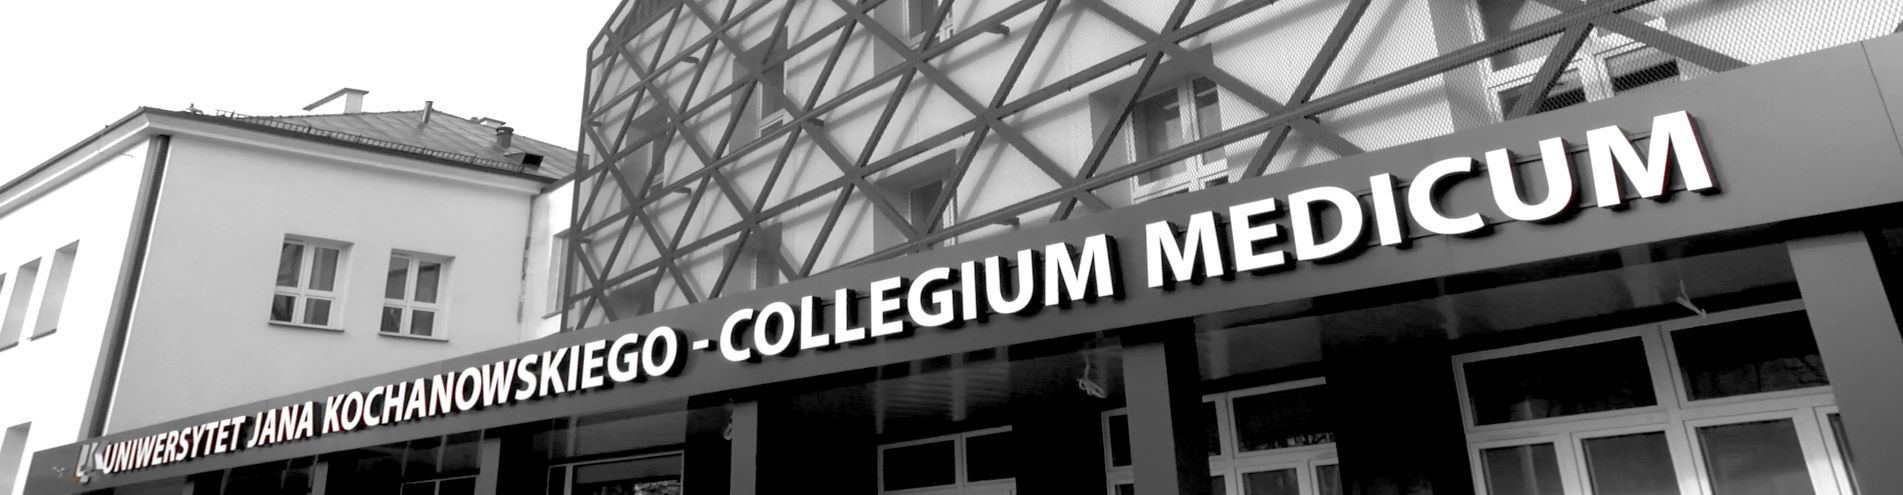 Wejście do Collegium Mediucm